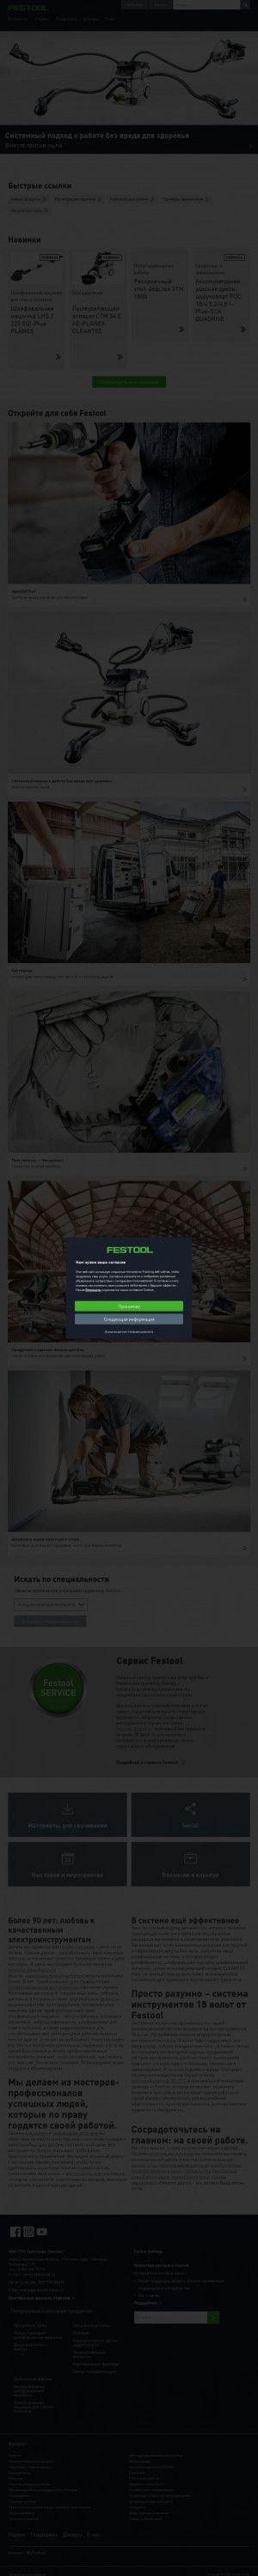 Предпросмотр для www.festool.ru — Фестул